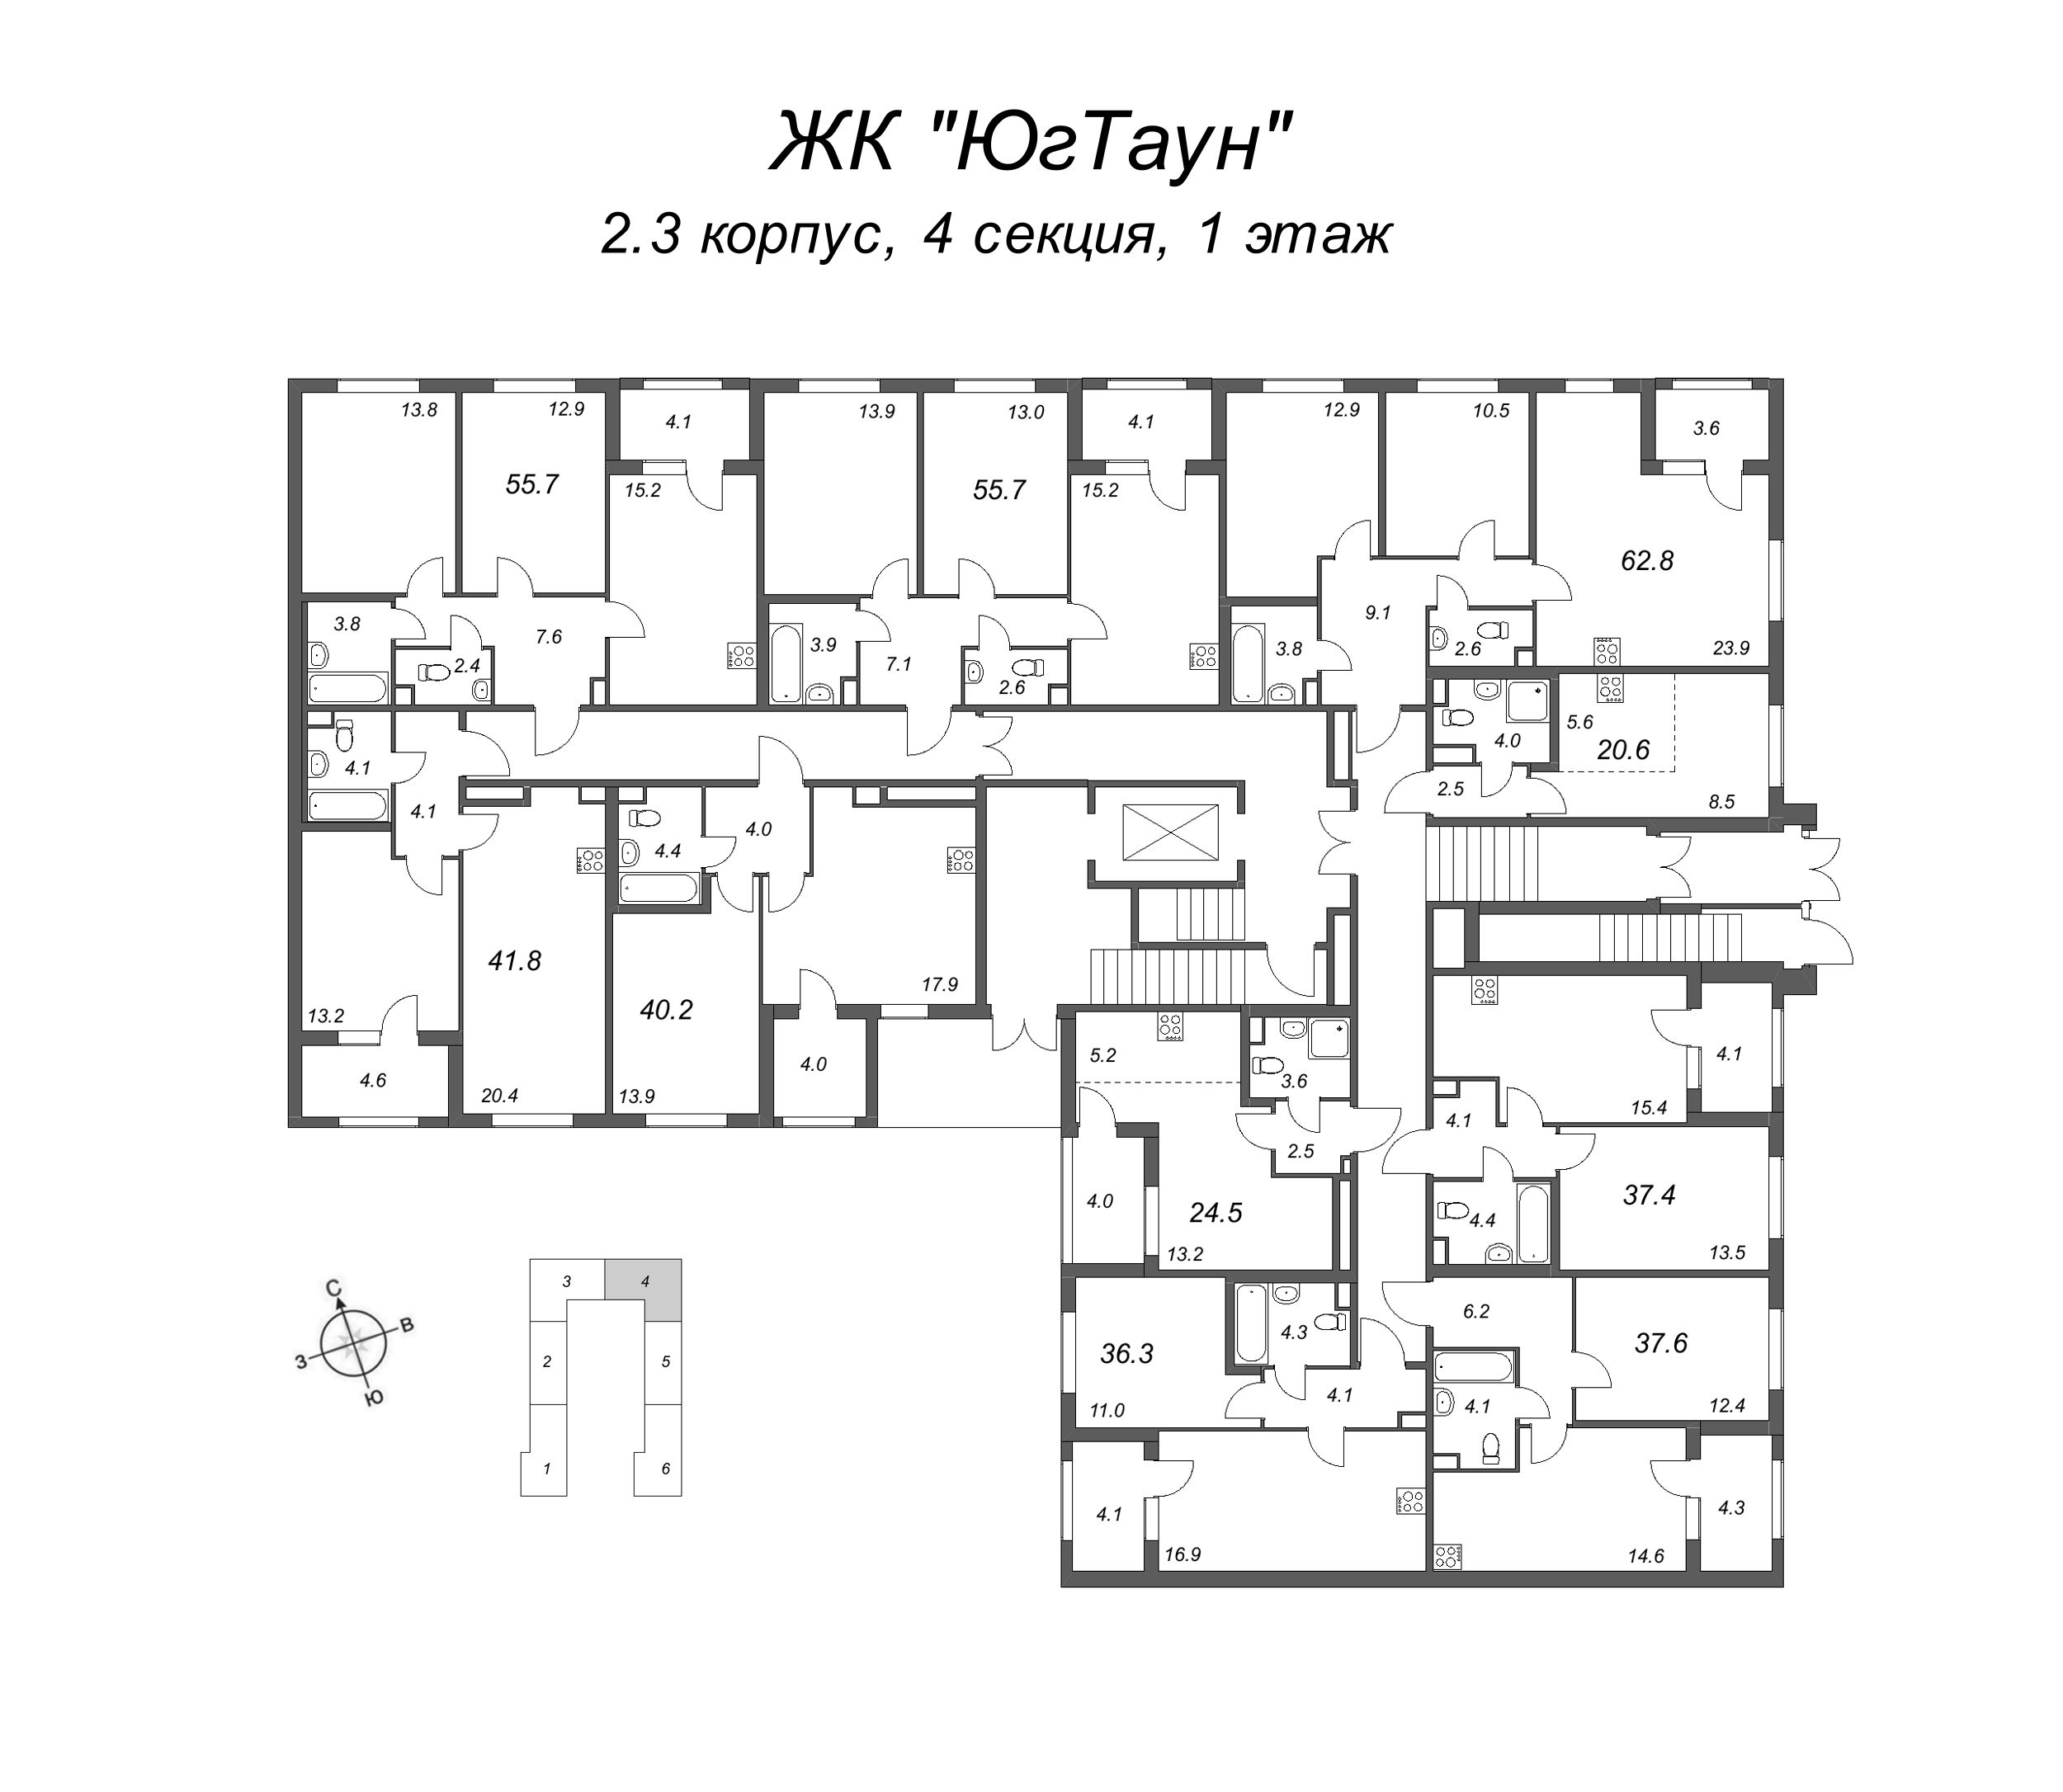 3-комнатная (Евро) квартира, 55.7 м² в ЖК "ЮгТаун" - планировка этажа